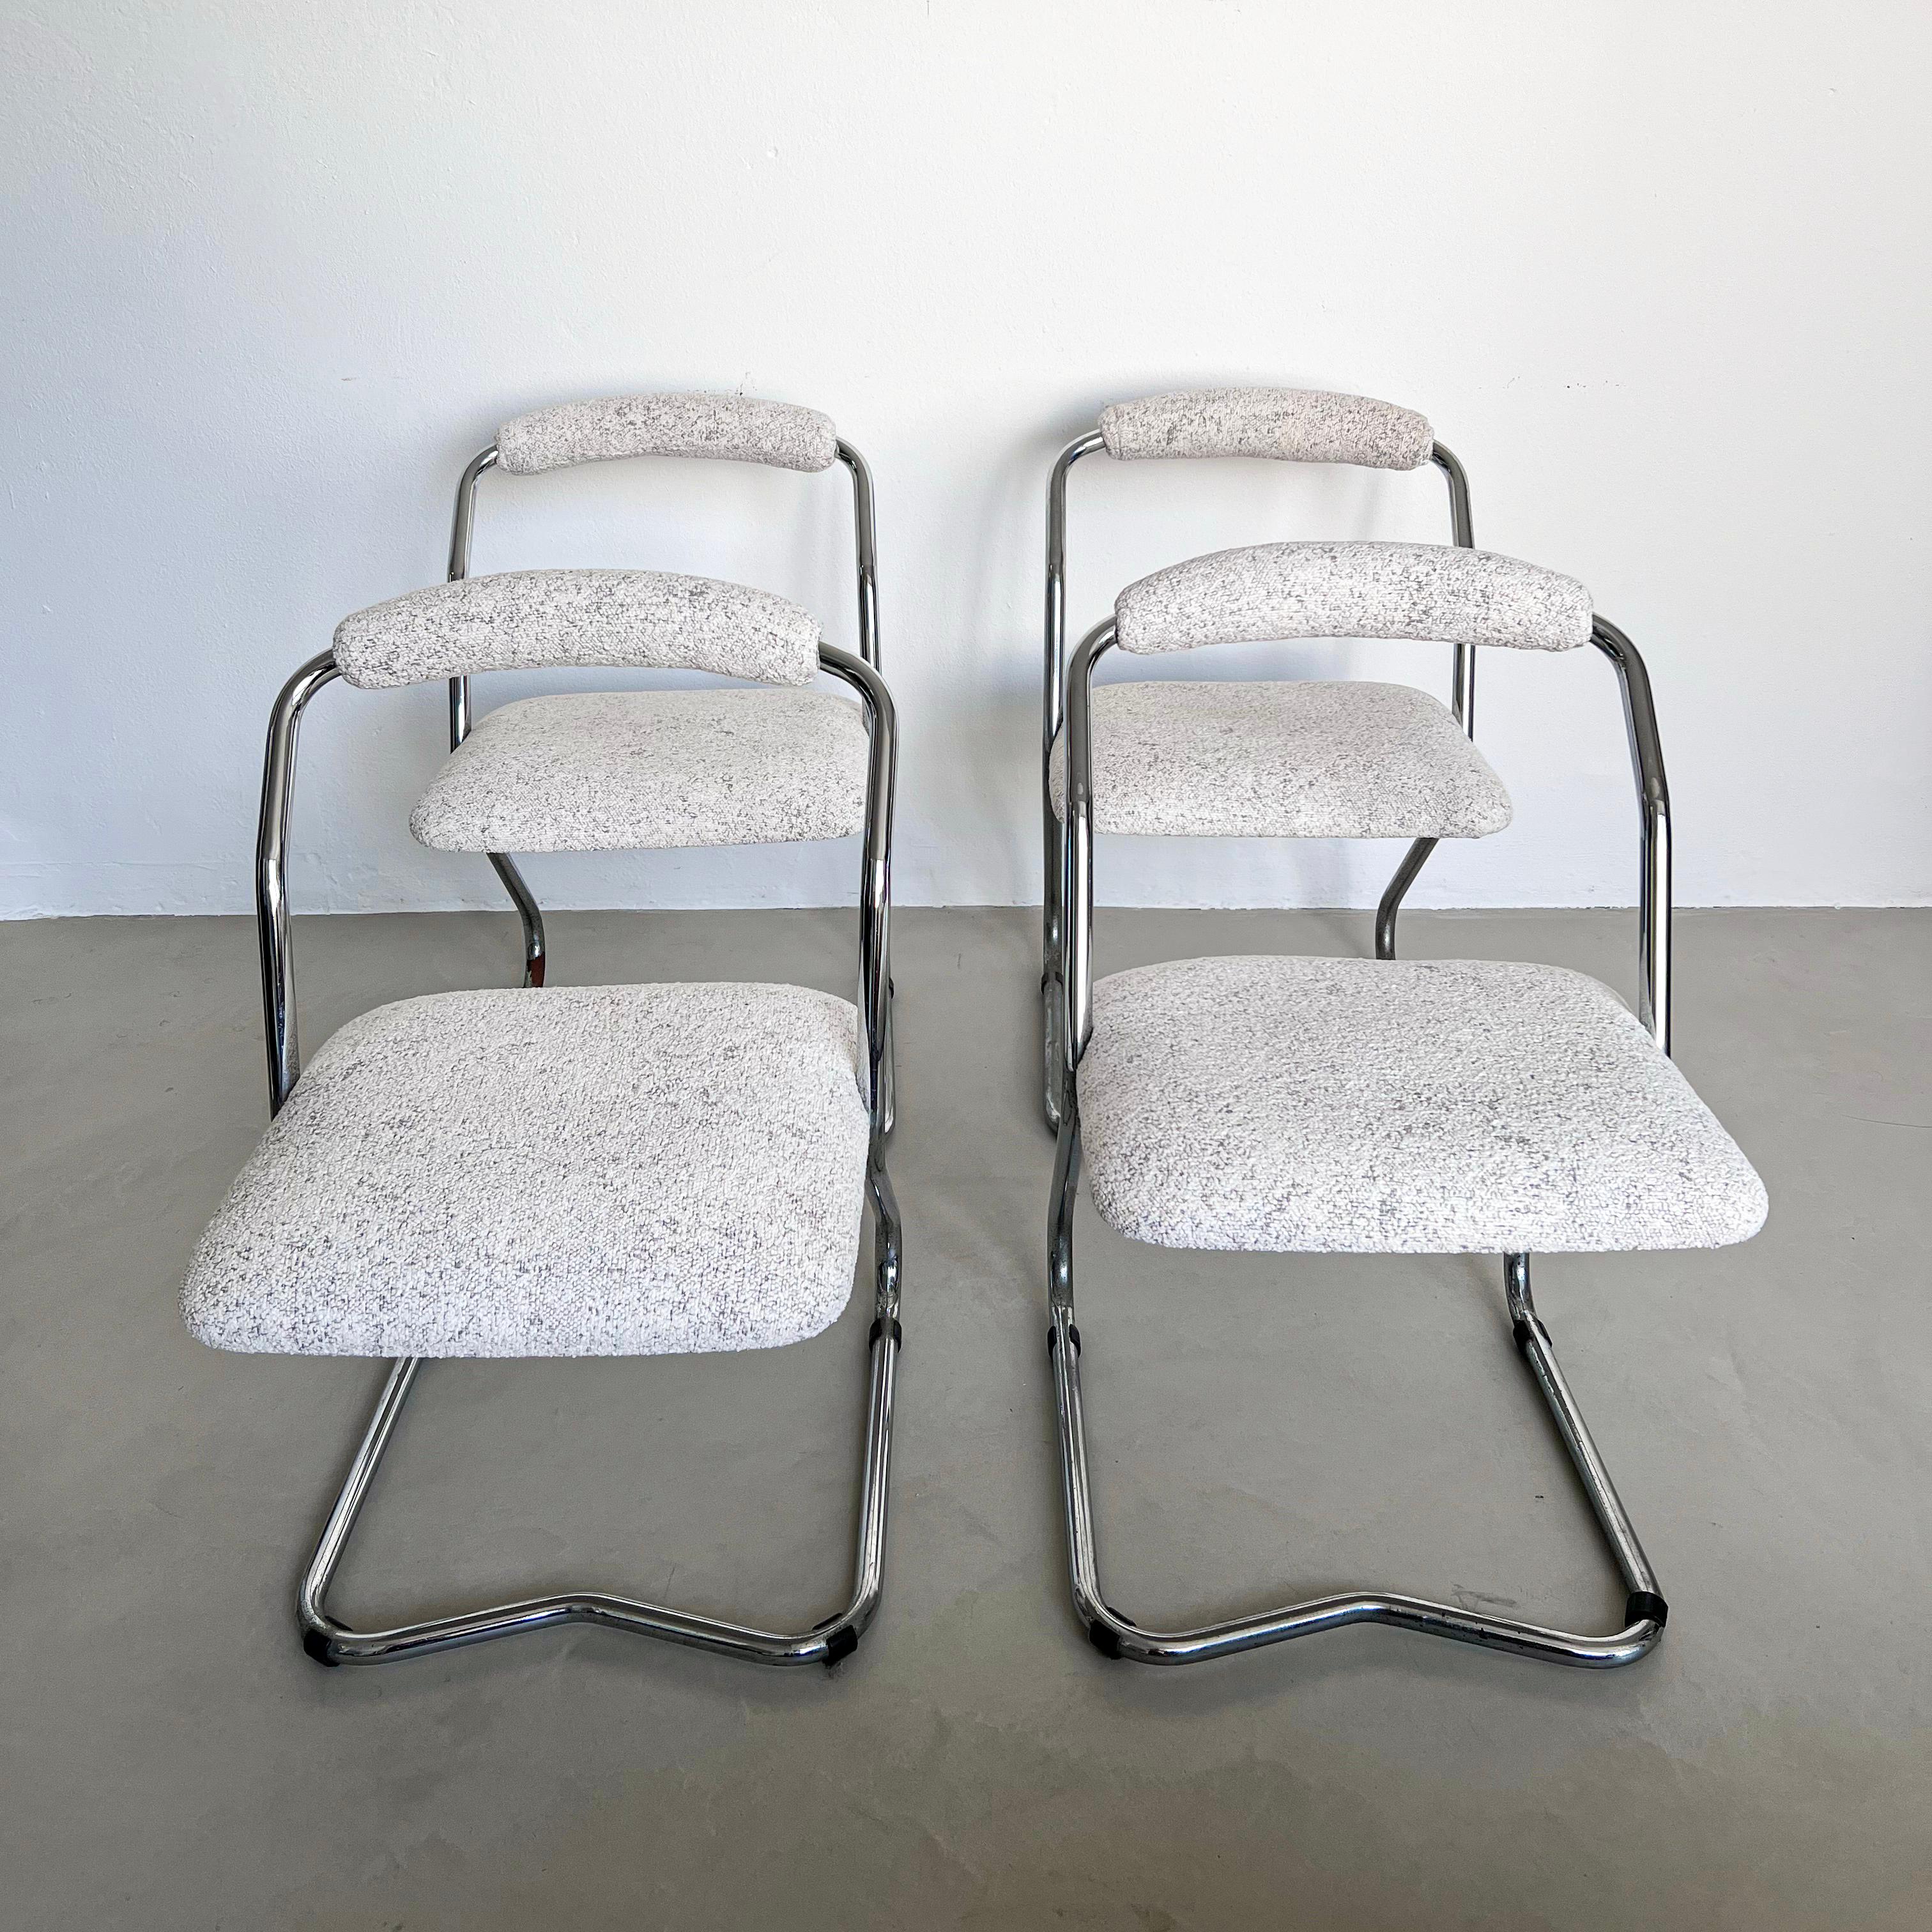 Chaises de salle à manger décoratives - Chaises bouclées blanches - Chaises cantilever chromées

Ensemble de quatre chaises de salle à manger Mid-Century Modern / Space AGE, avec une structure tubulaire continue décorative en métal chromé, une